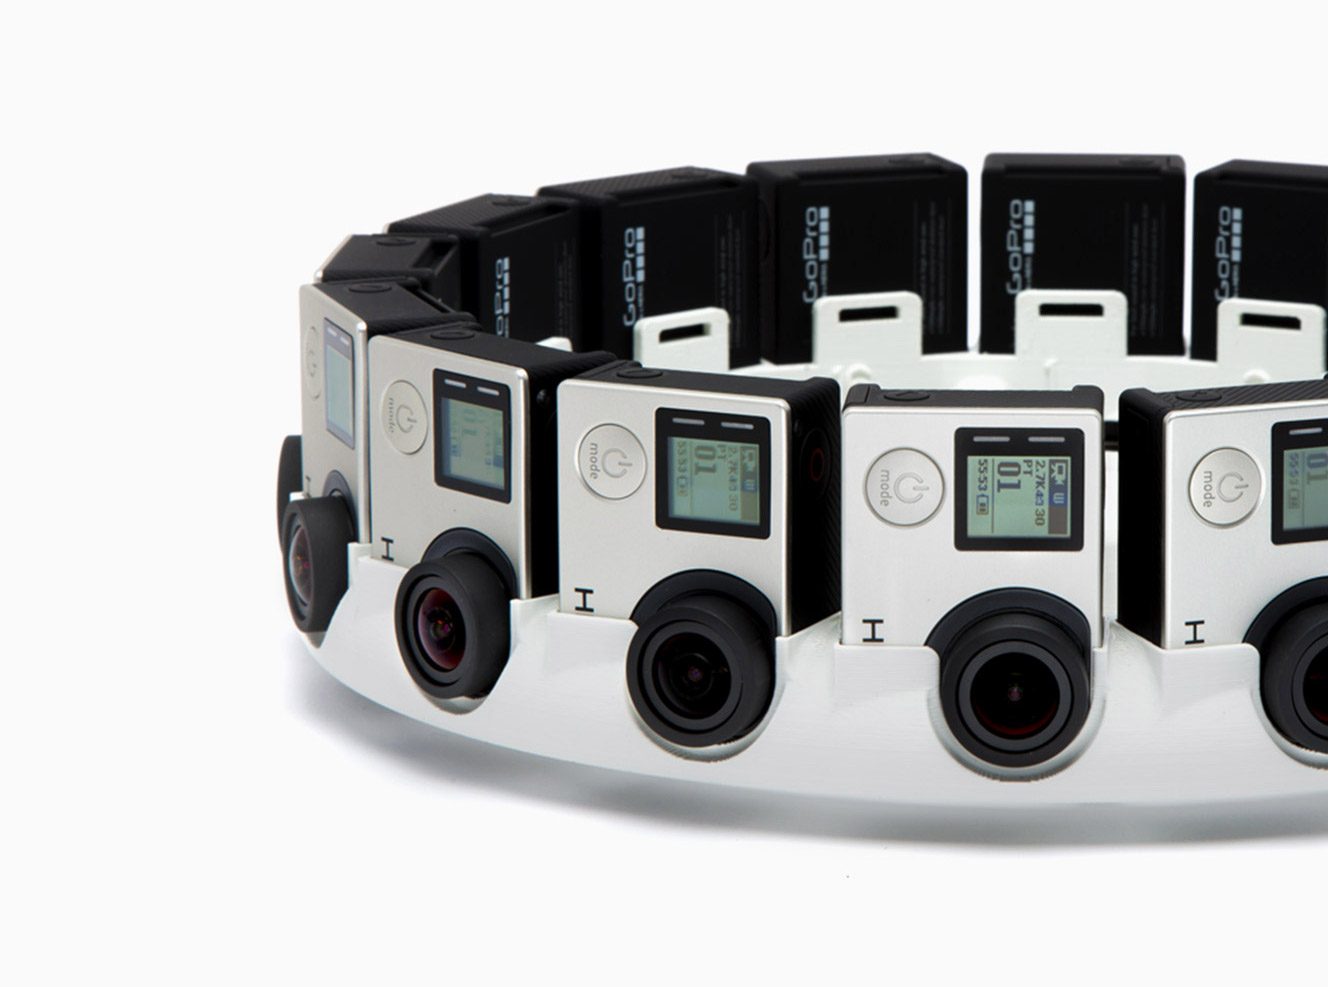 Gopro To Make 16 Camera Vr Film Rig Based On Google S Jump Design Road To Vr